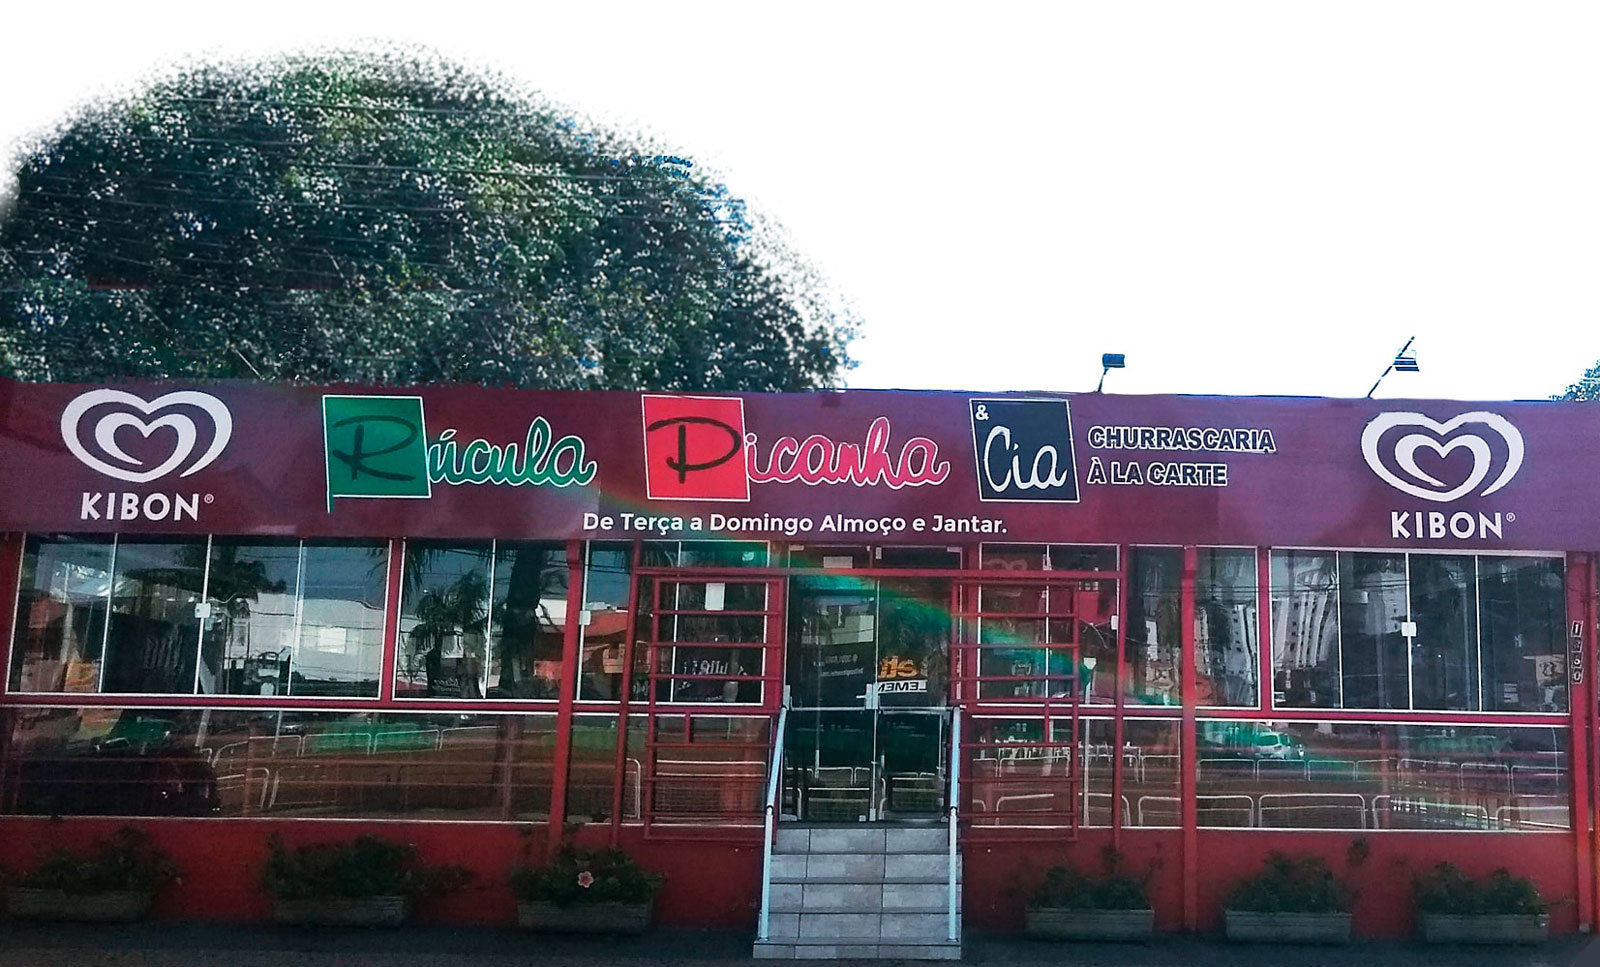 Fachada do Rúcula Picanha & Cia na Avenida Brasil em Americana SP.